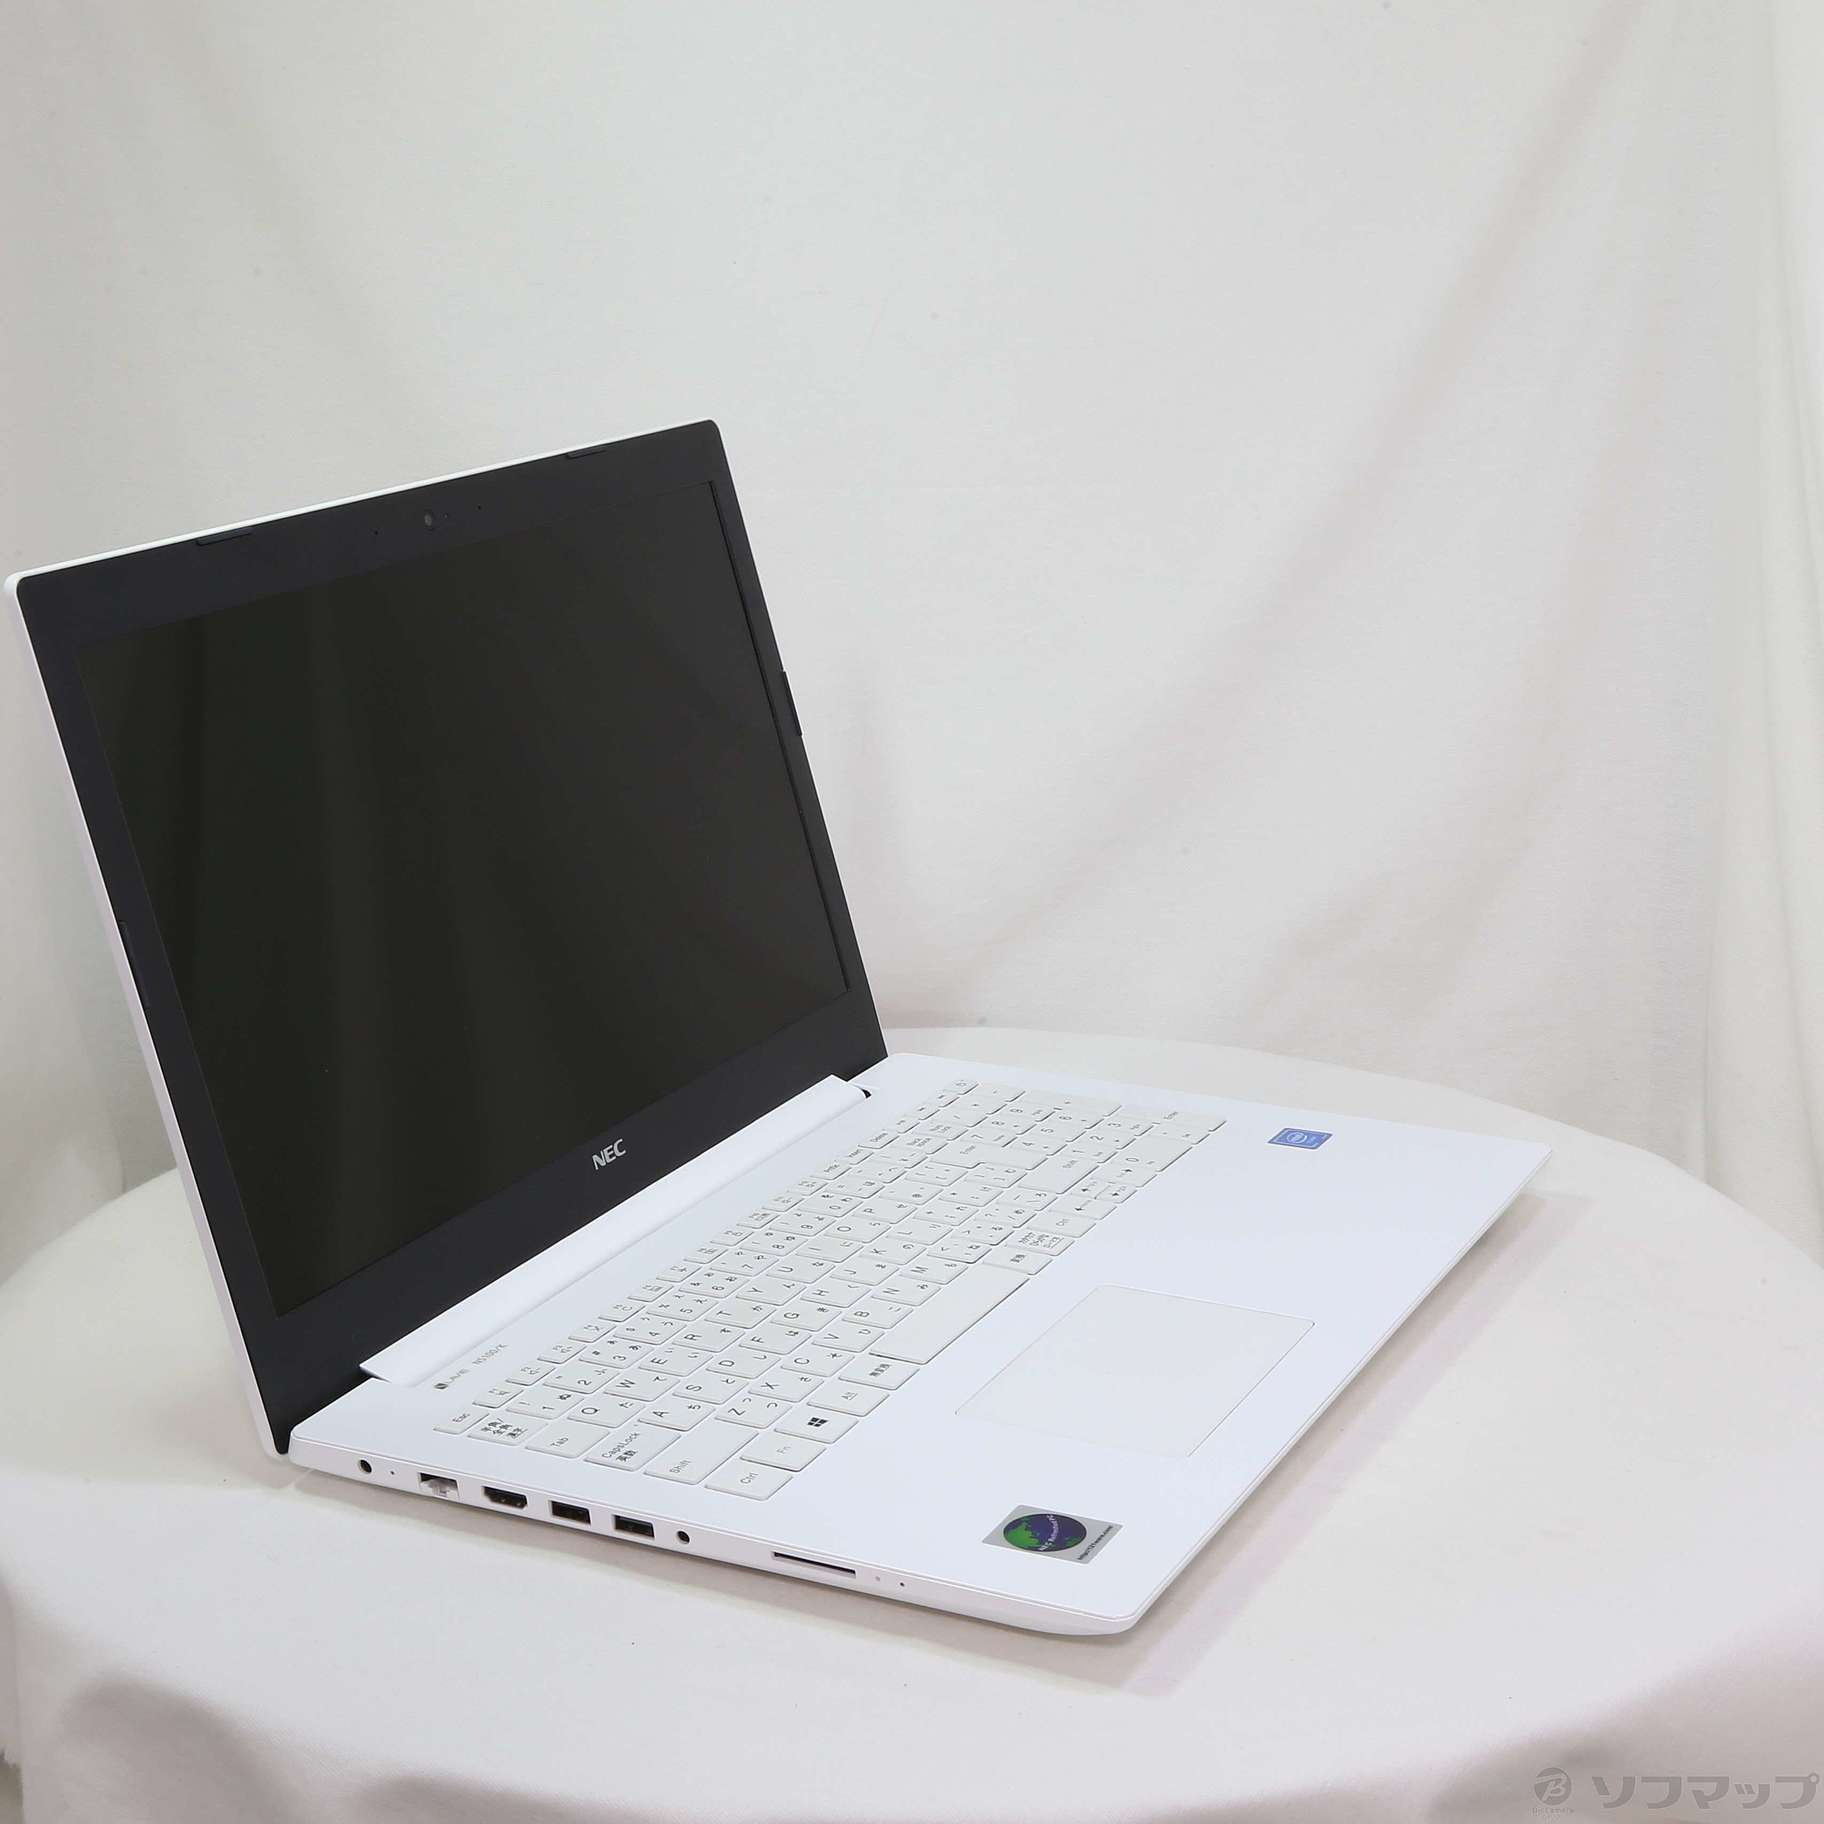 【中古】LaVie Note Standard PC-NS100K2W-H6 カームホワイト 〔NEC Refreshed PC